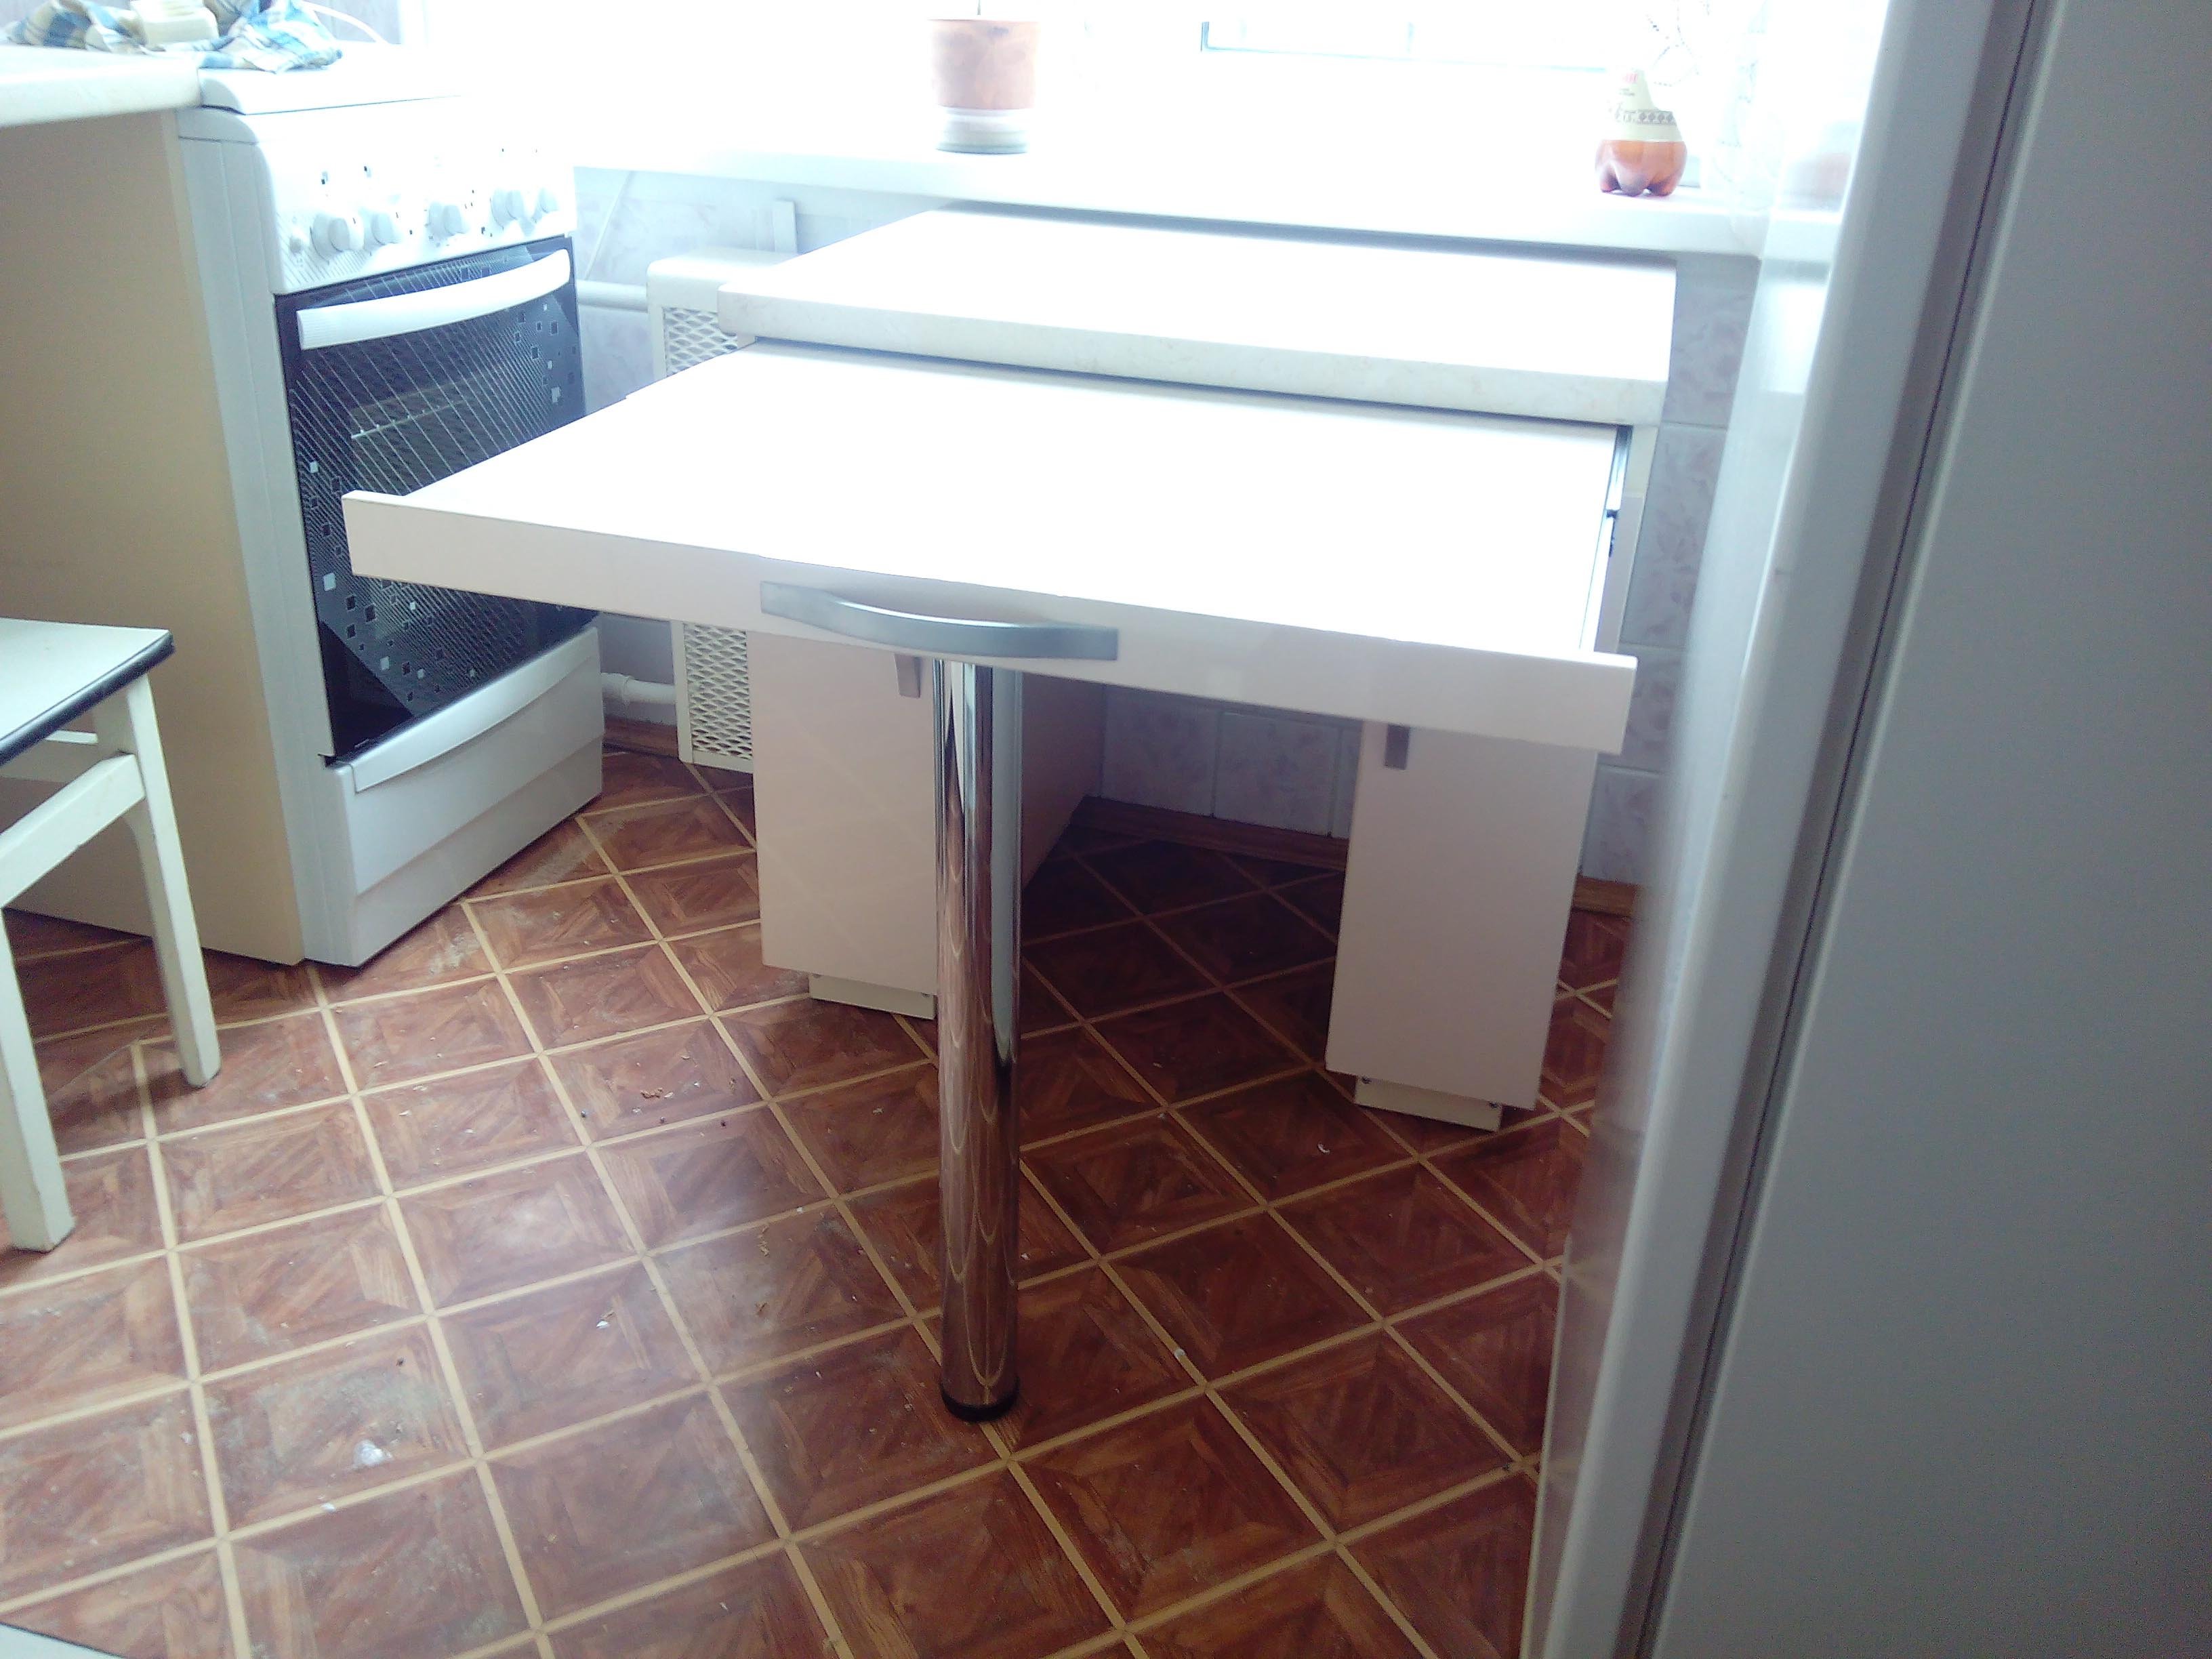 кухонный стол с выдвижным ящиком под столешницей